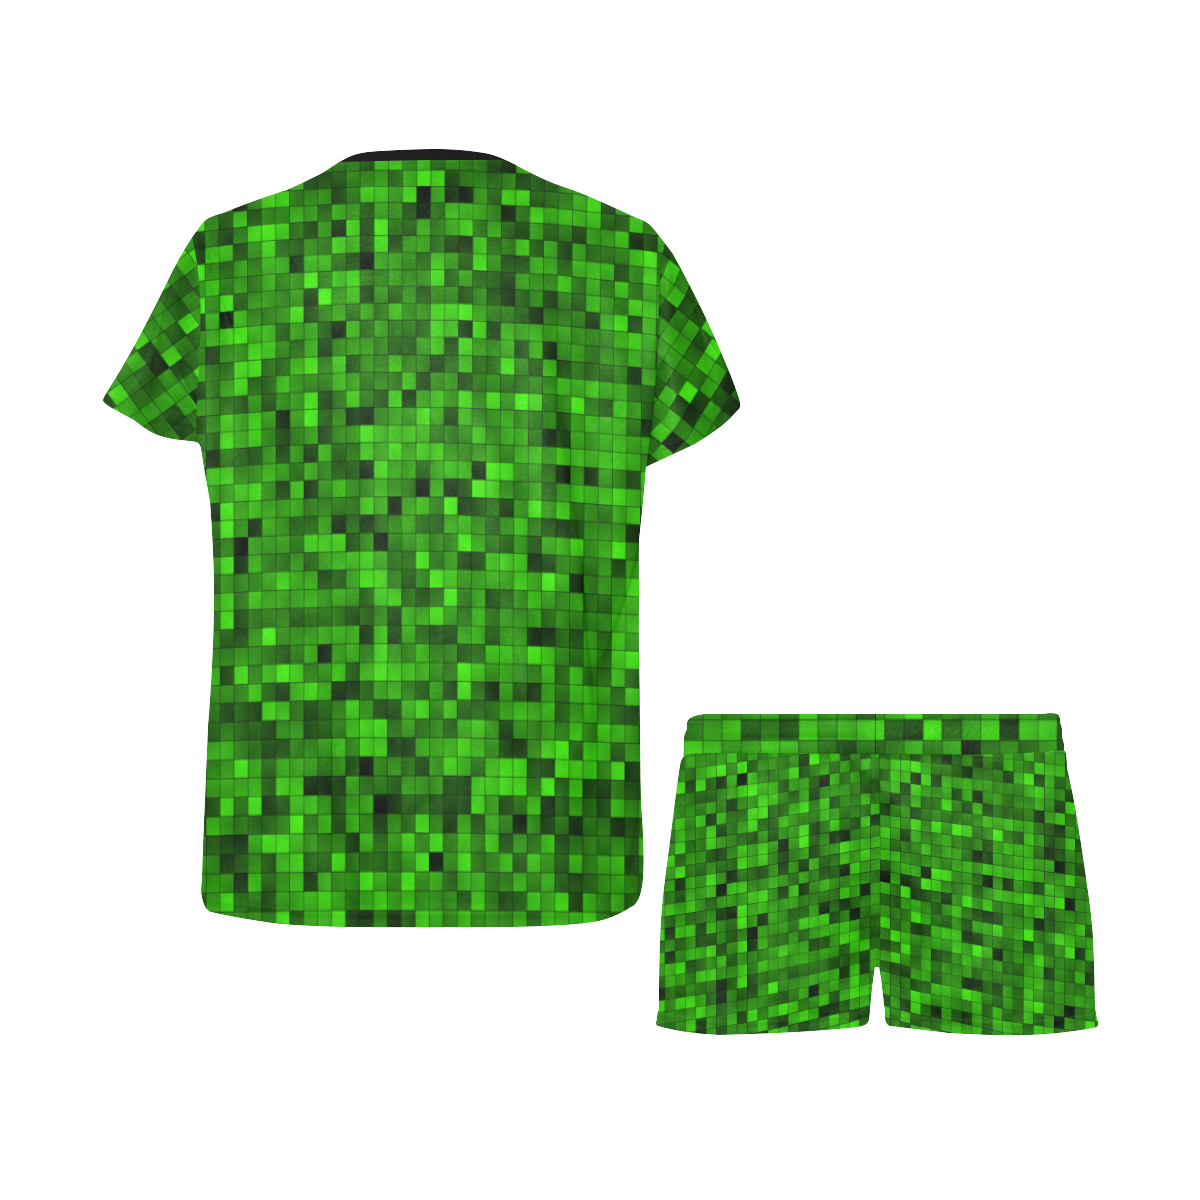 Green Mosaic Women's Short Pajama Set